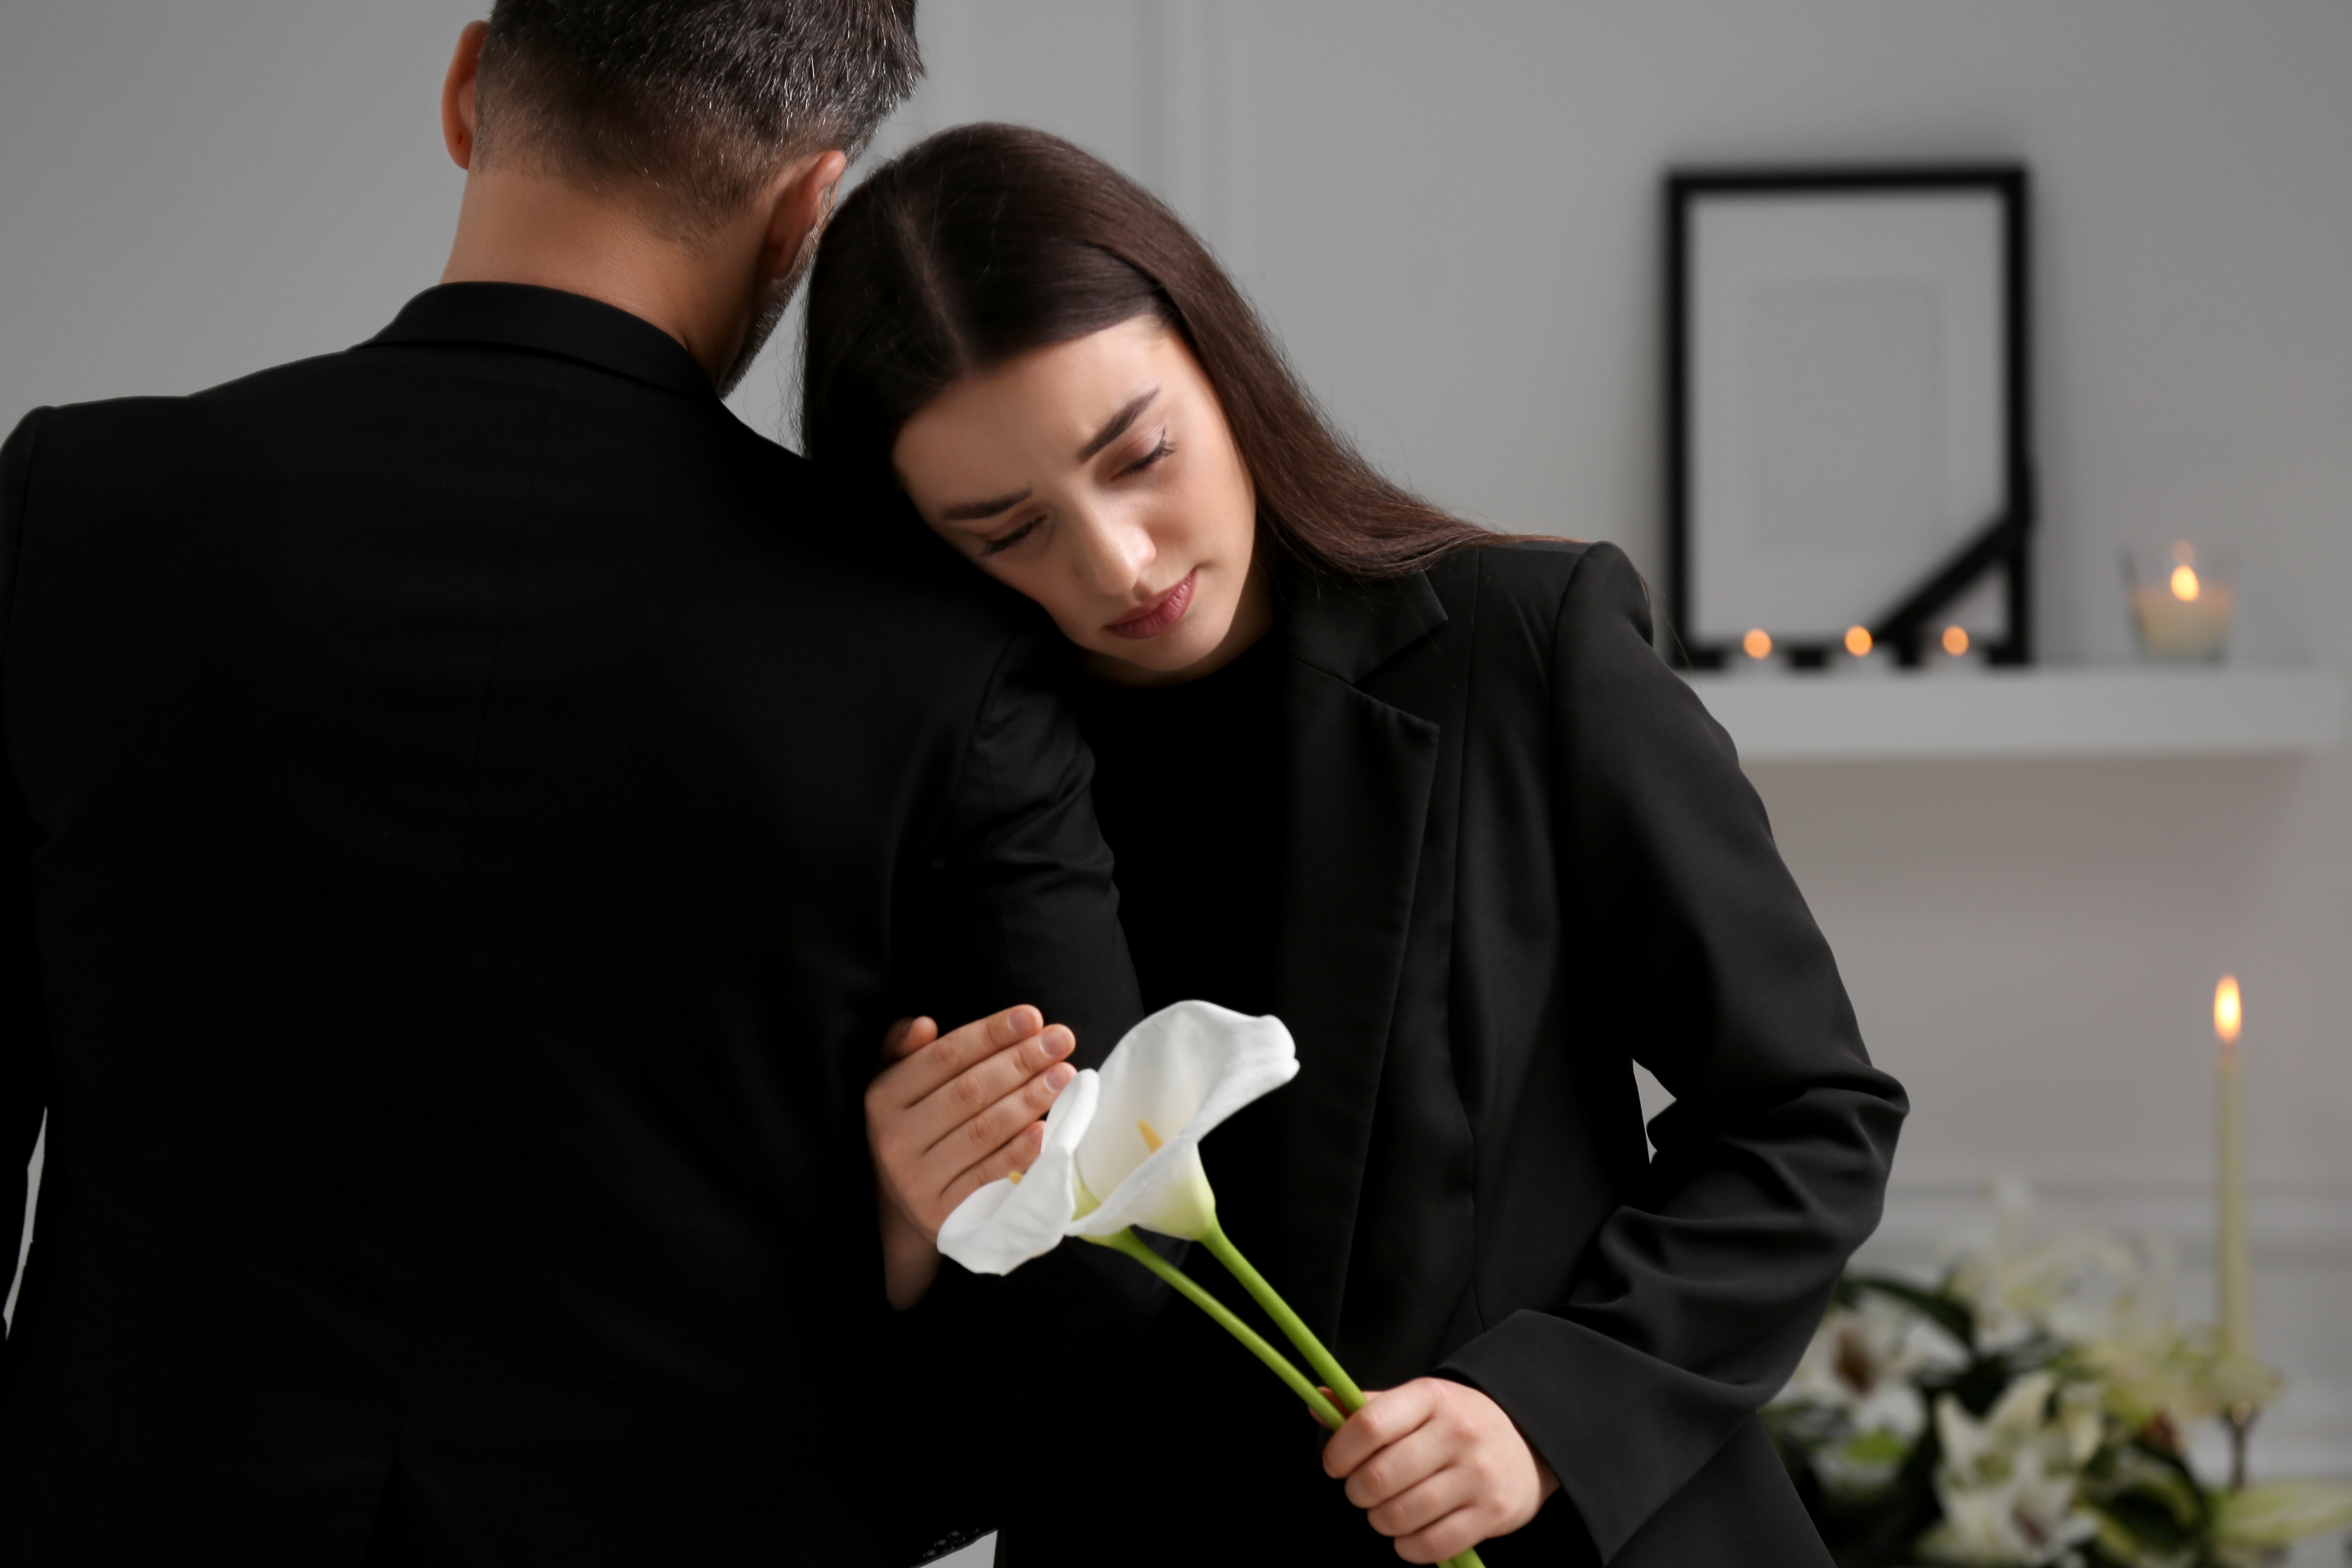 Un couple à l'air triste lors d'un enterrement | Source : Shuttertsock